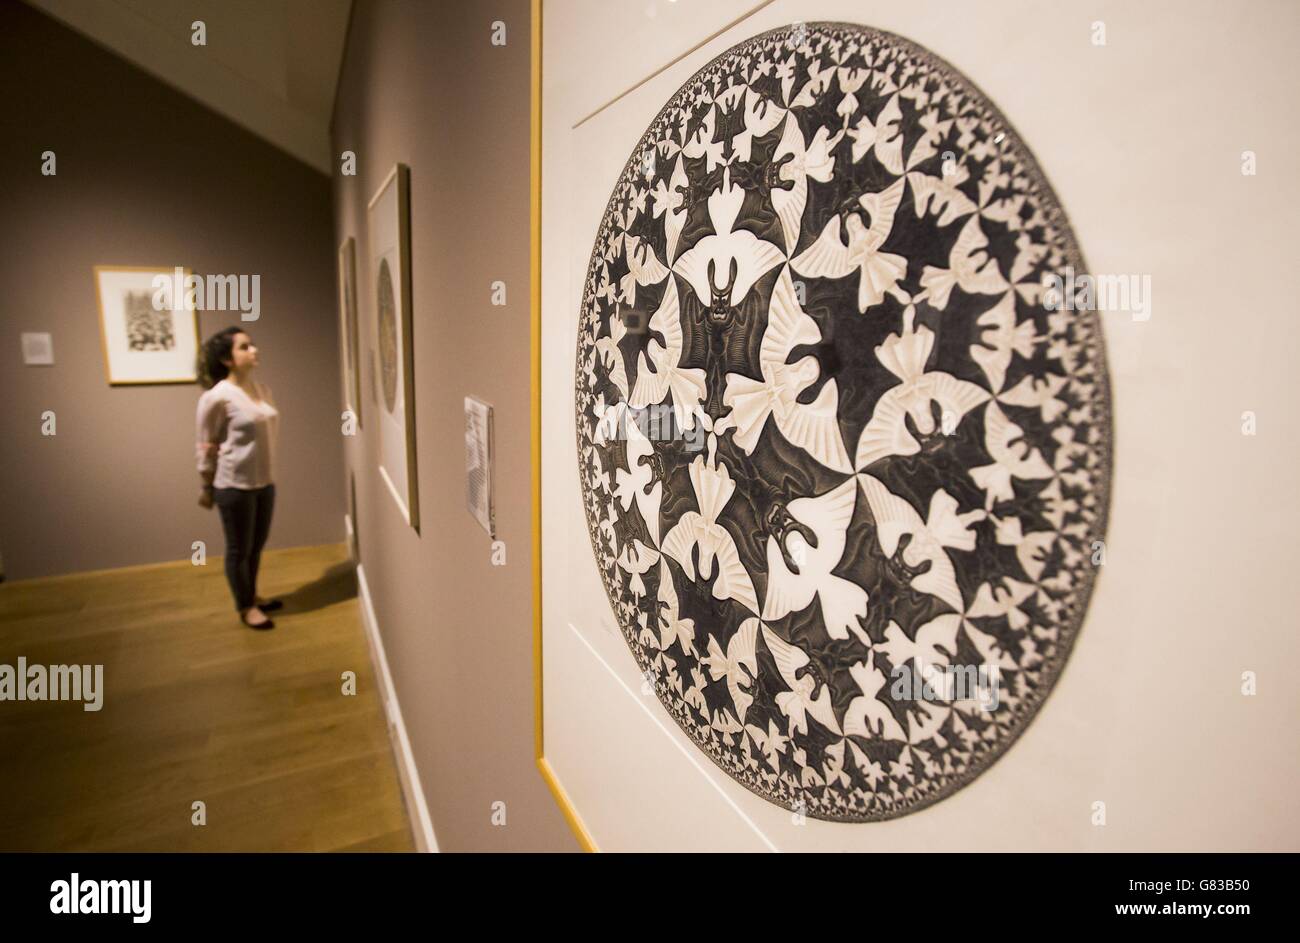 Die Mitarbeiterin der National Galleries of Scotland Adeline Amar mit einer Arbeit von M.C. Escher im Vorfeld einer großen Retrospektive der Künstler in der Scottish National Gallery of Modern Art in Edinburgh. Stockfoto